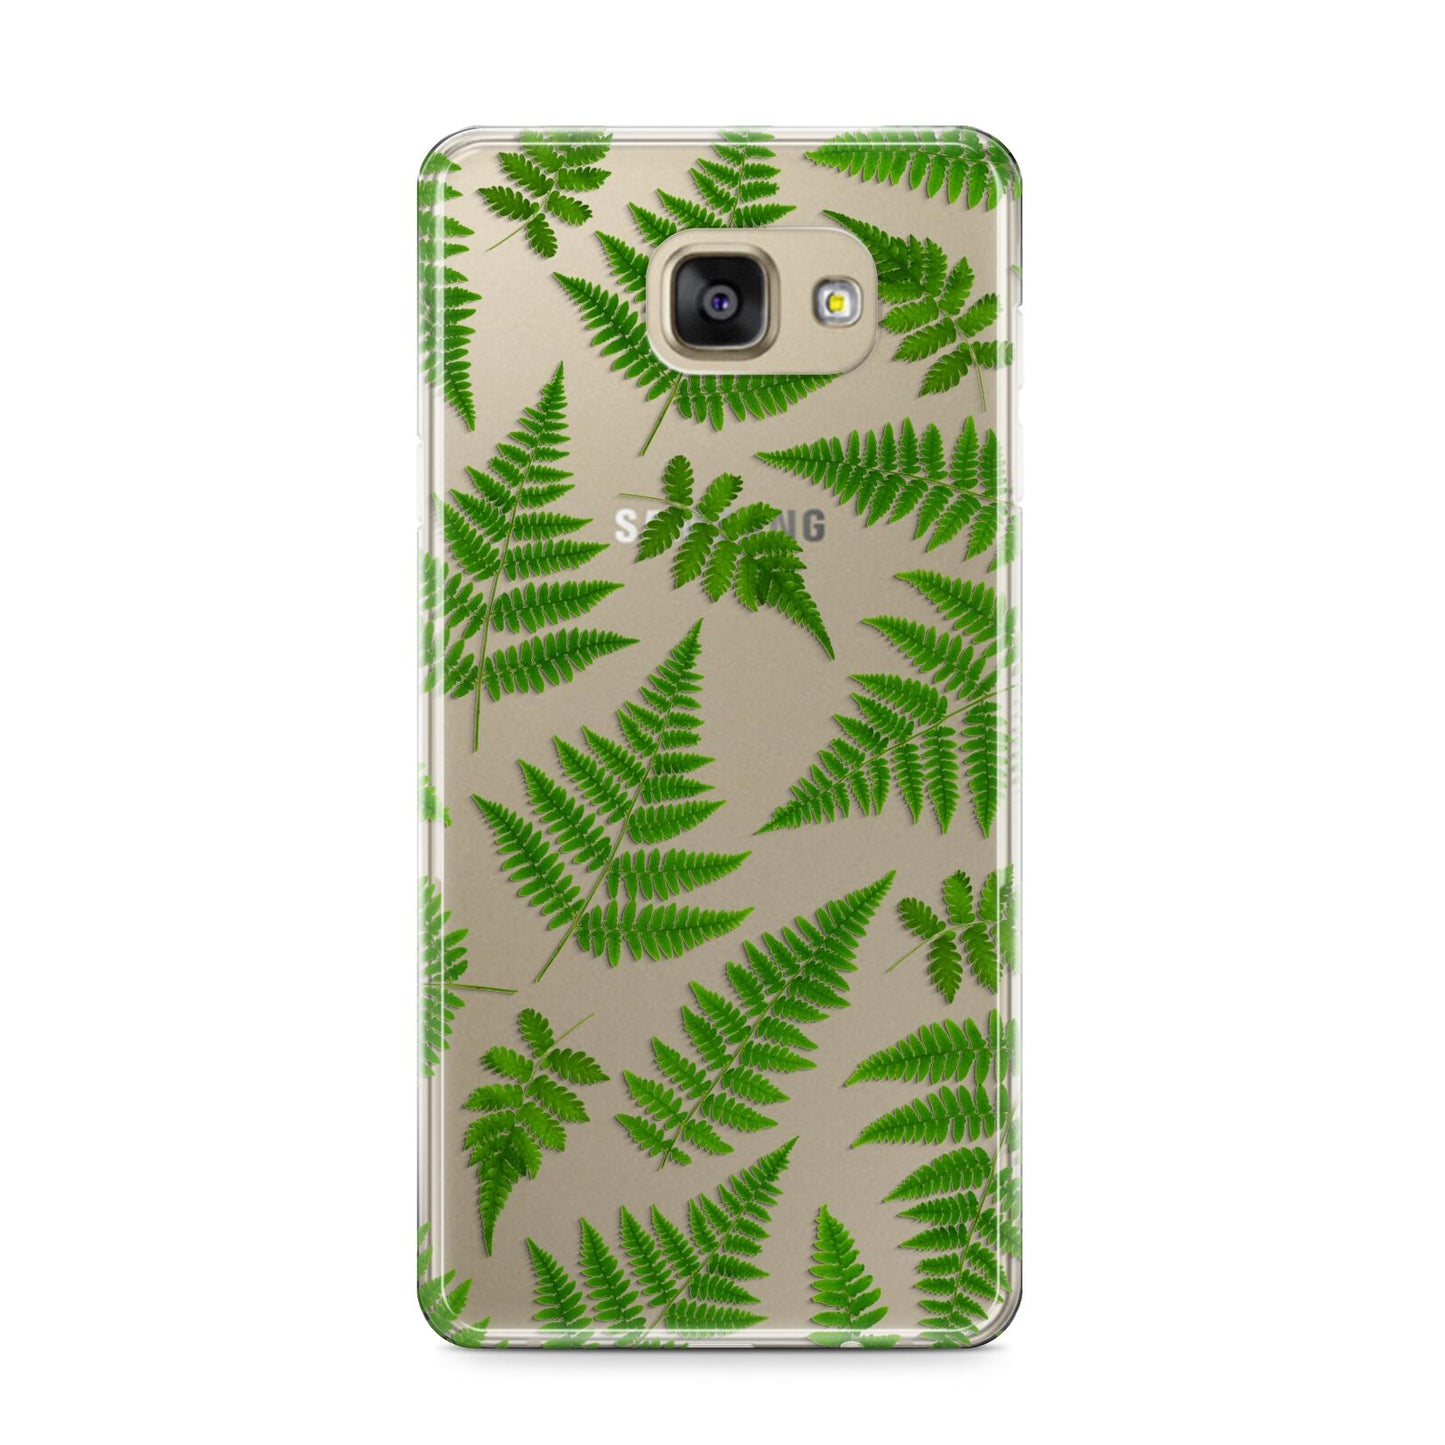 Fern Leaf Samsung Galaxy A9 2016 Case on gold phone